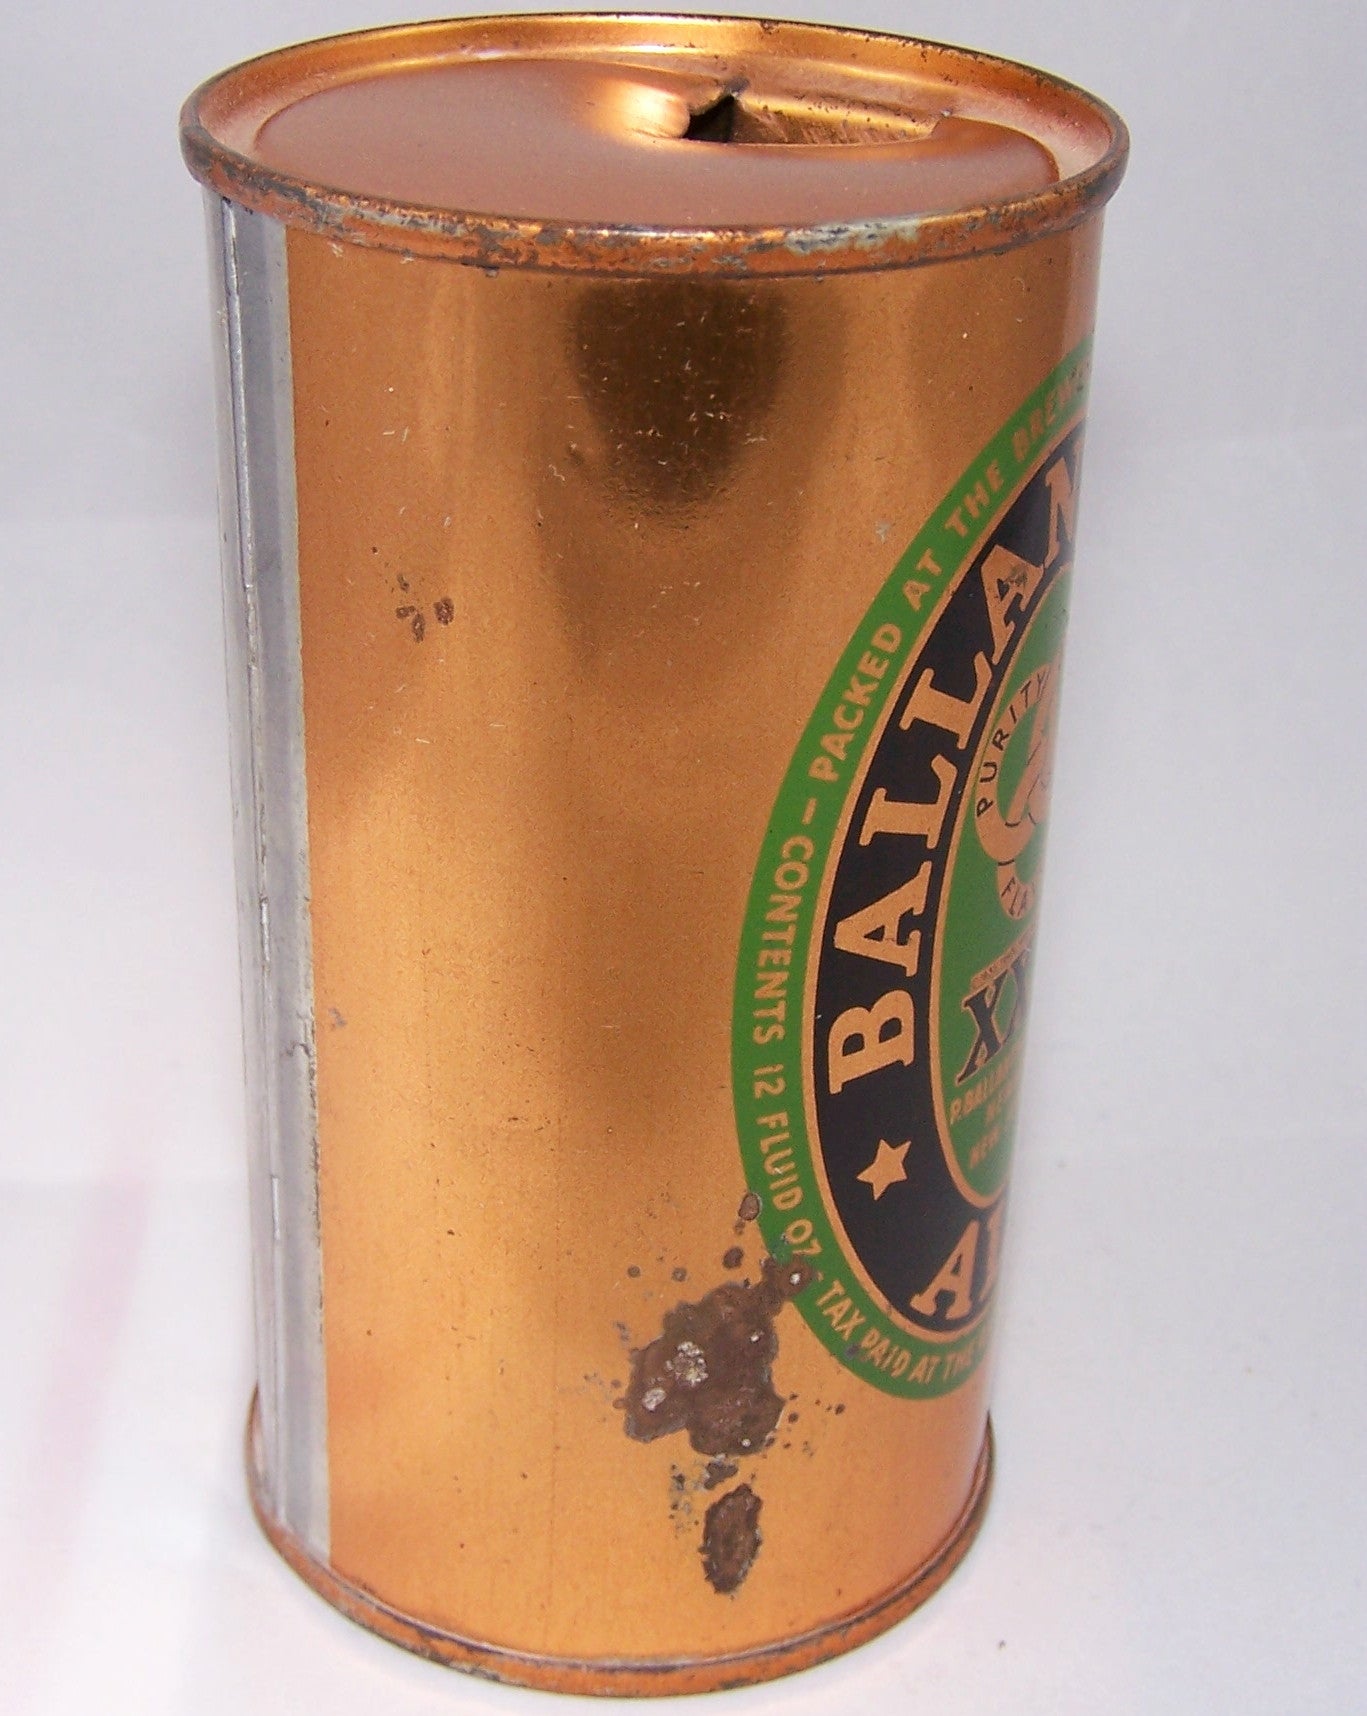 Ballantine's Ale, Lilek page # 65, Grade 1- Sold 4/20/15